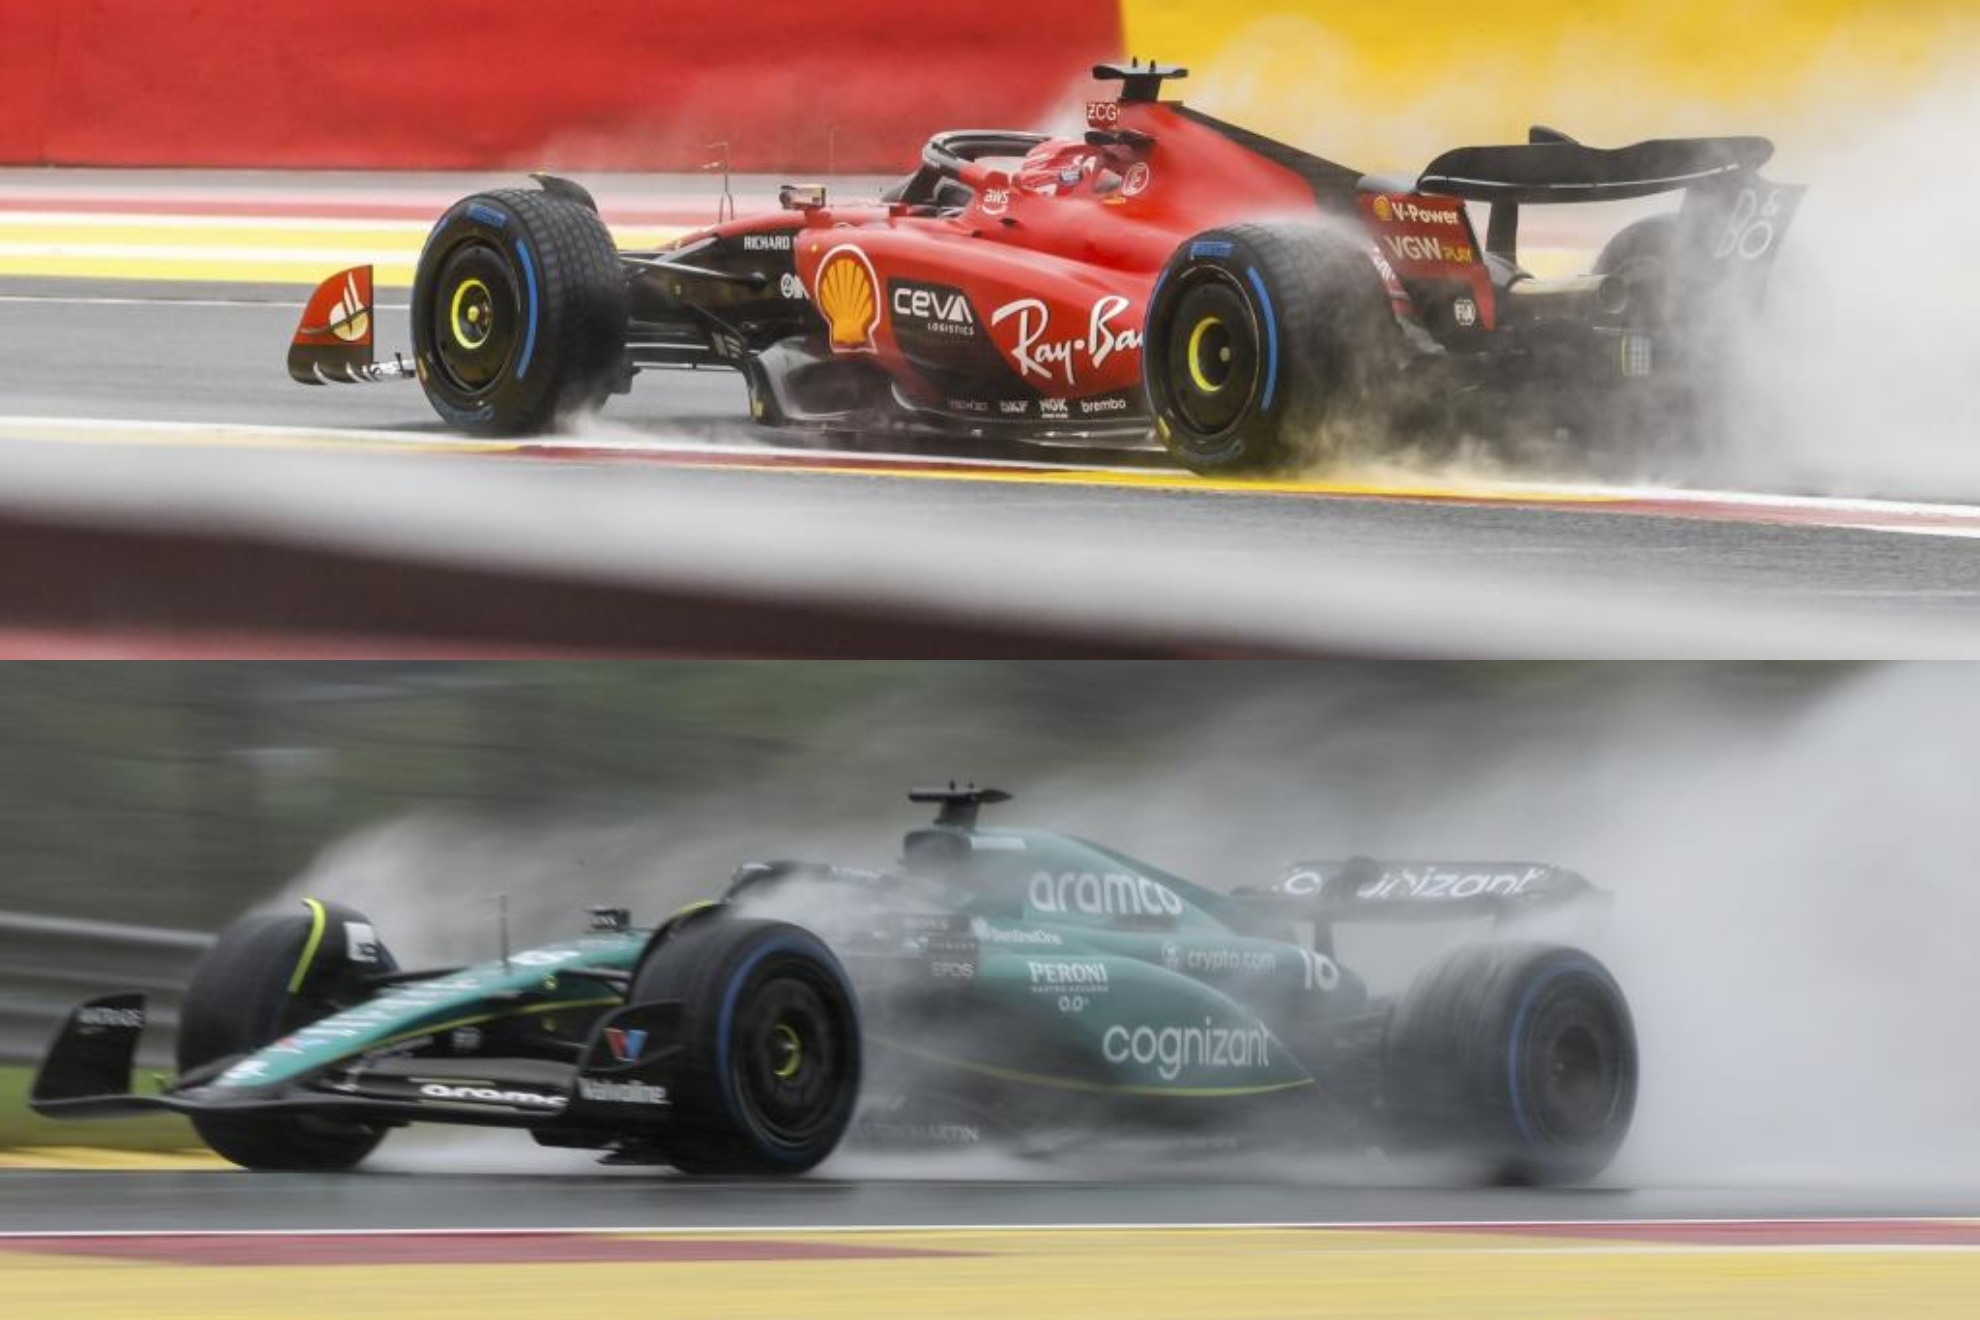 Clasificación, parrilla y pole del Gran Premio de Bélgica de Fórmula 1 | Alonso 9º y Sainz 4º